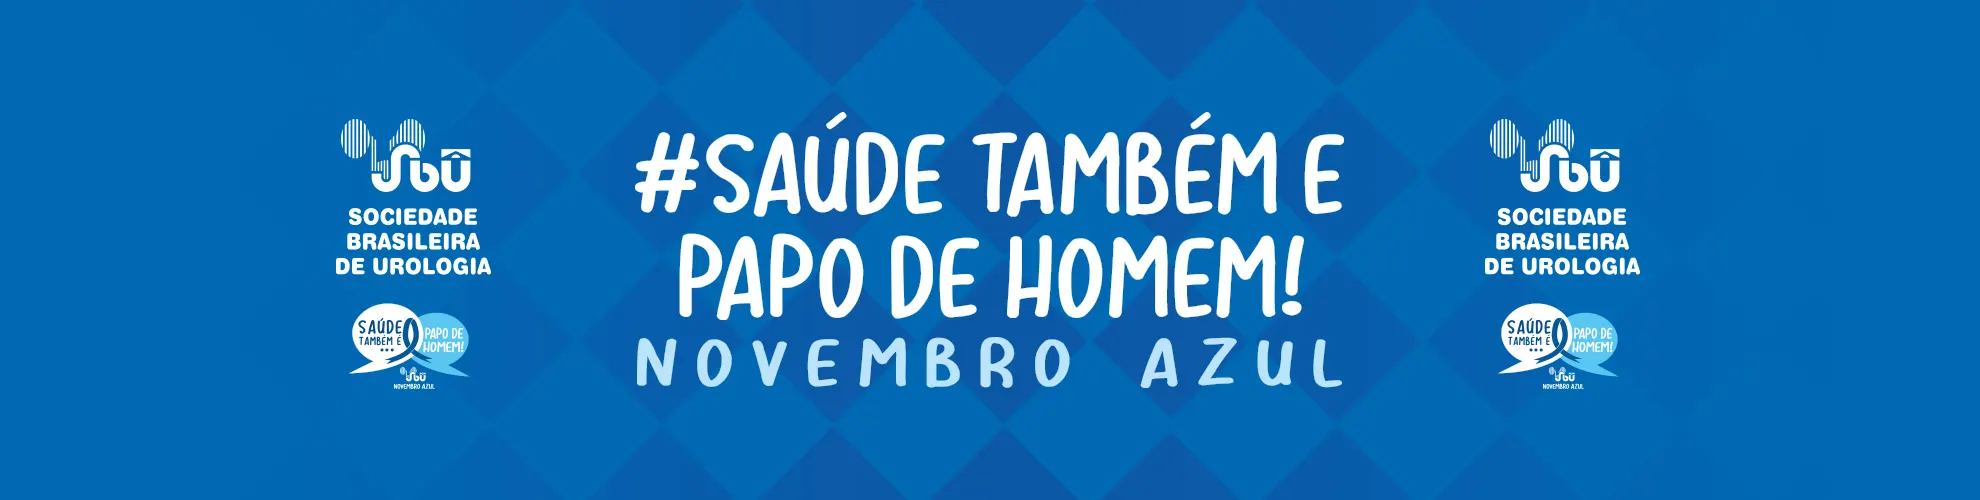 Novembro Azul Sociedade Brasileira de Urologia